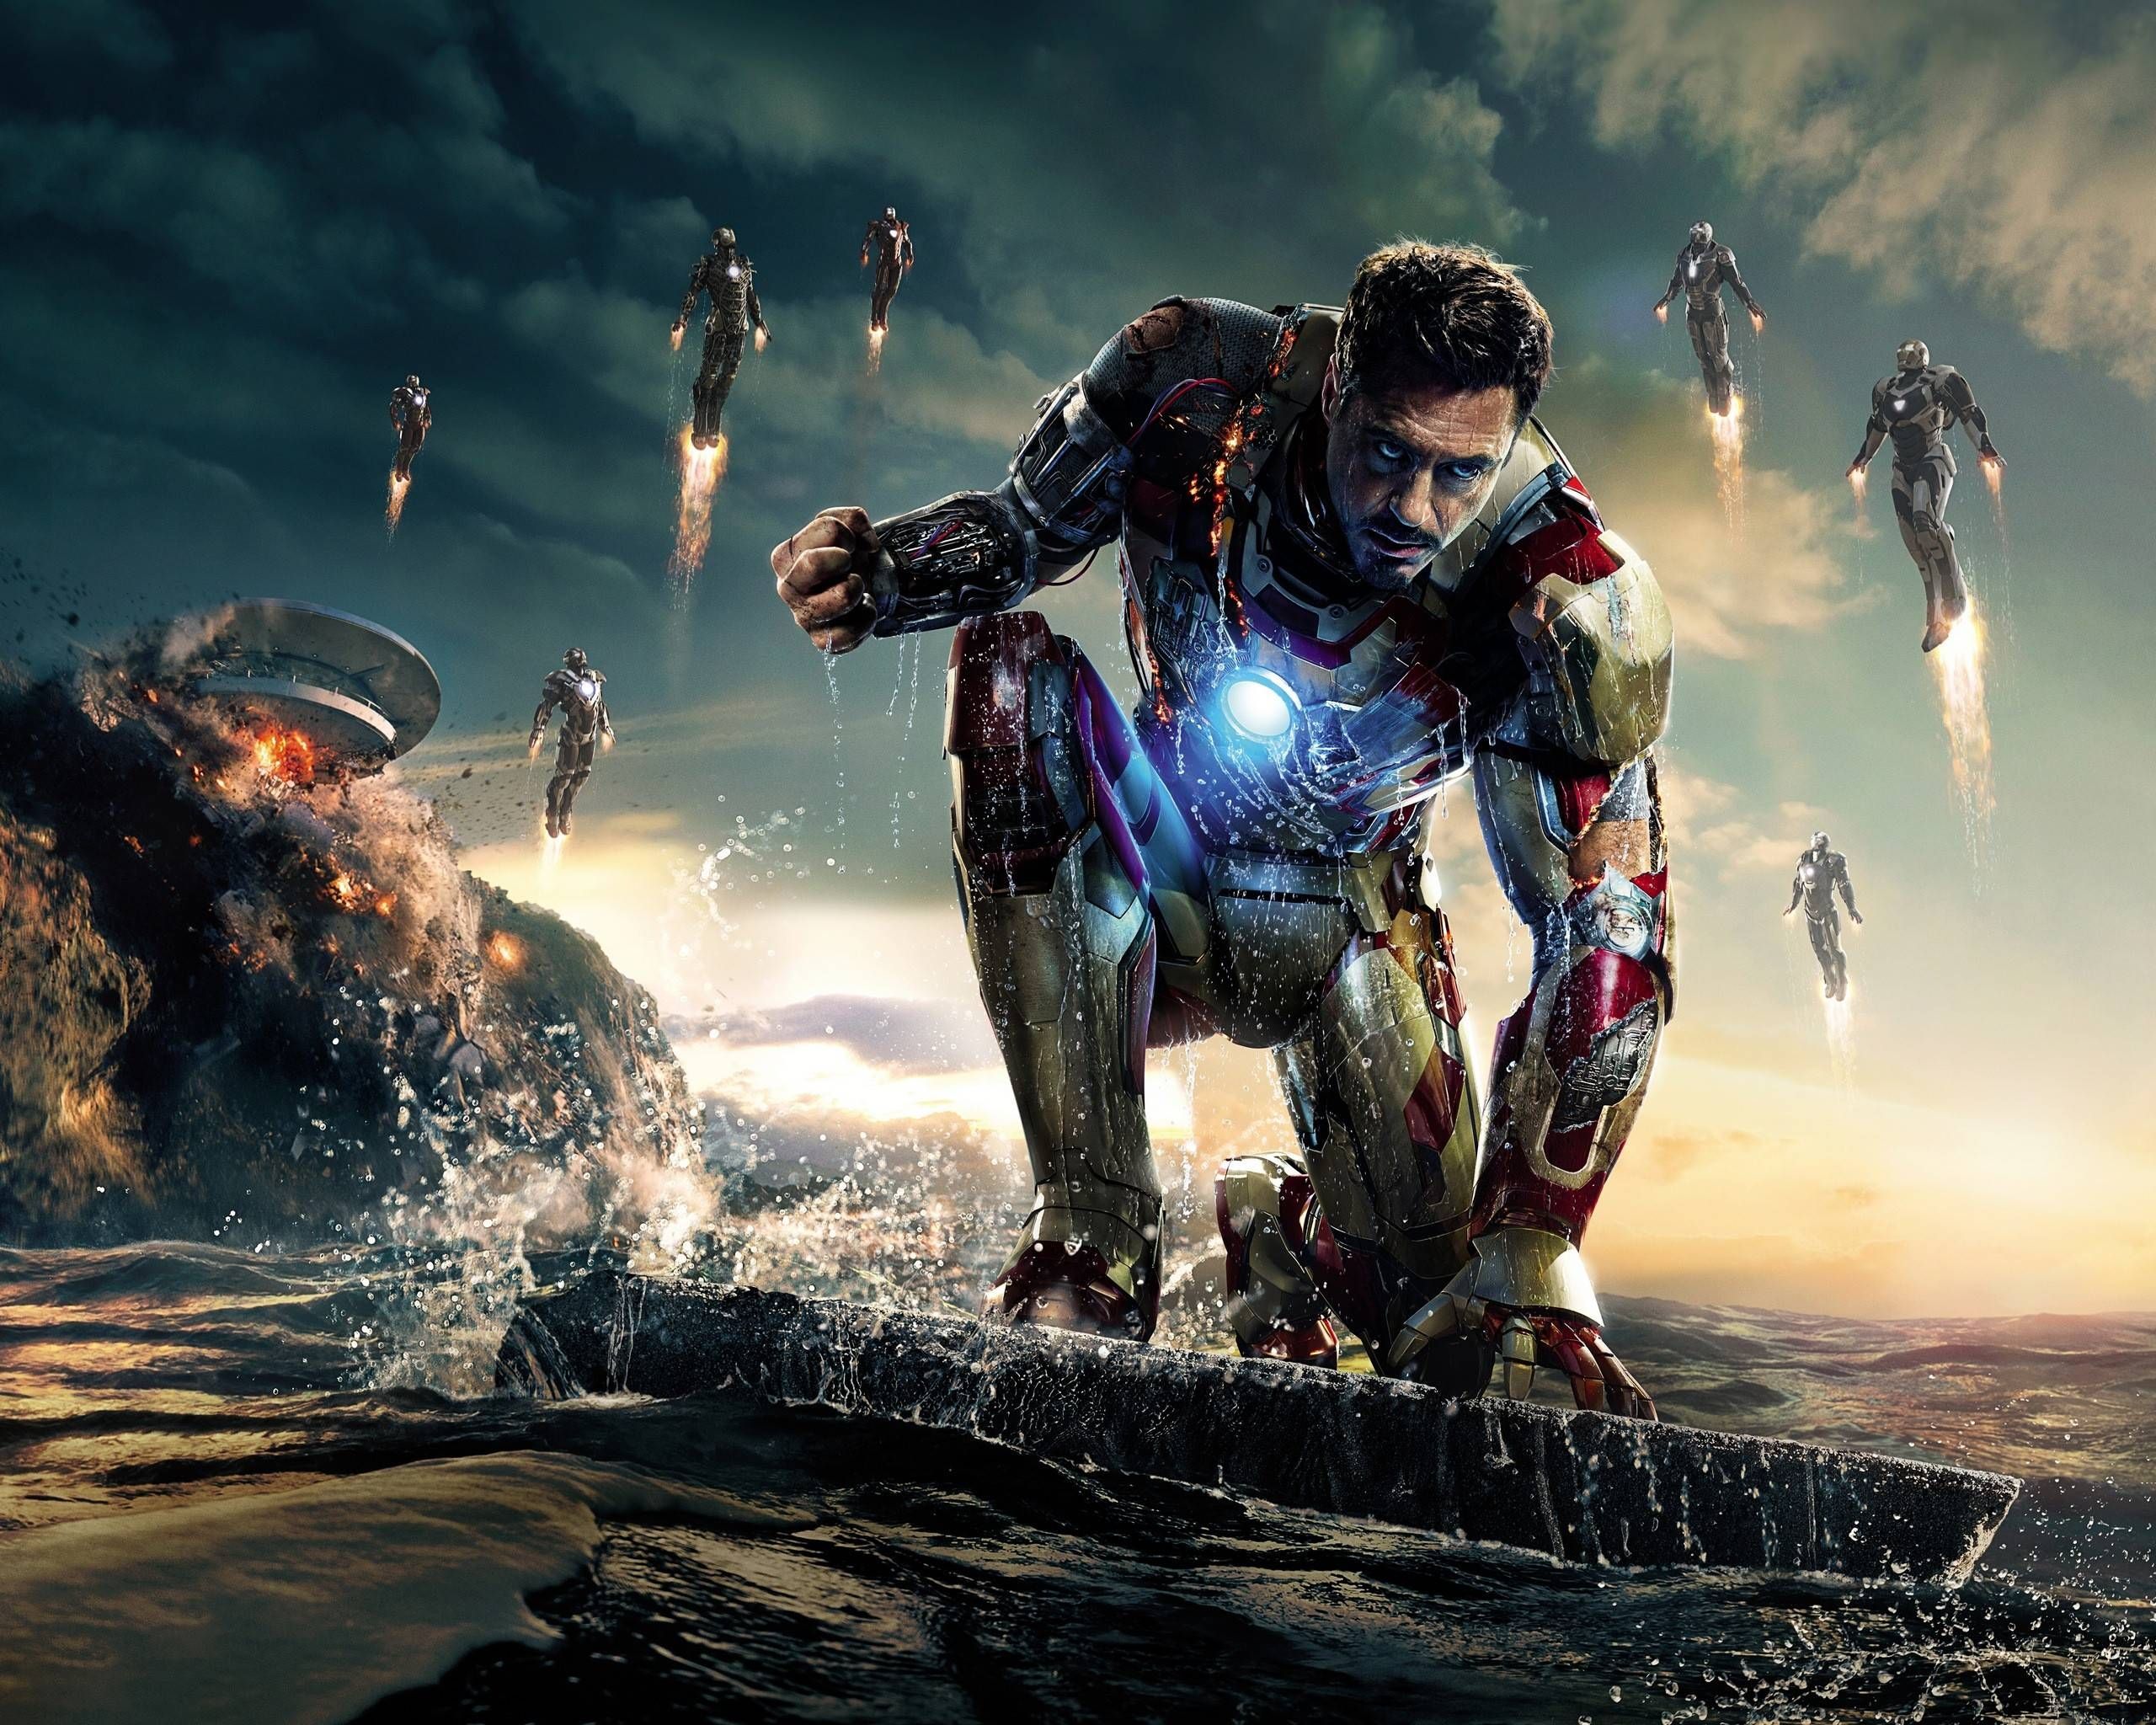 Dưới sự thể hiện của Robert Downey Jr., nhân vật Iron Man thuộc vũ trụ điện ảnh Marvel Cinematic Universe (MCU) đã trở thành siêu anh hùng quen thuộc và được yêu mến bởi đông đảo fan hâm mộ. Hãy khám phá những khoảnh khắc đáng nhớ của anh hùng này trên màn bạc.